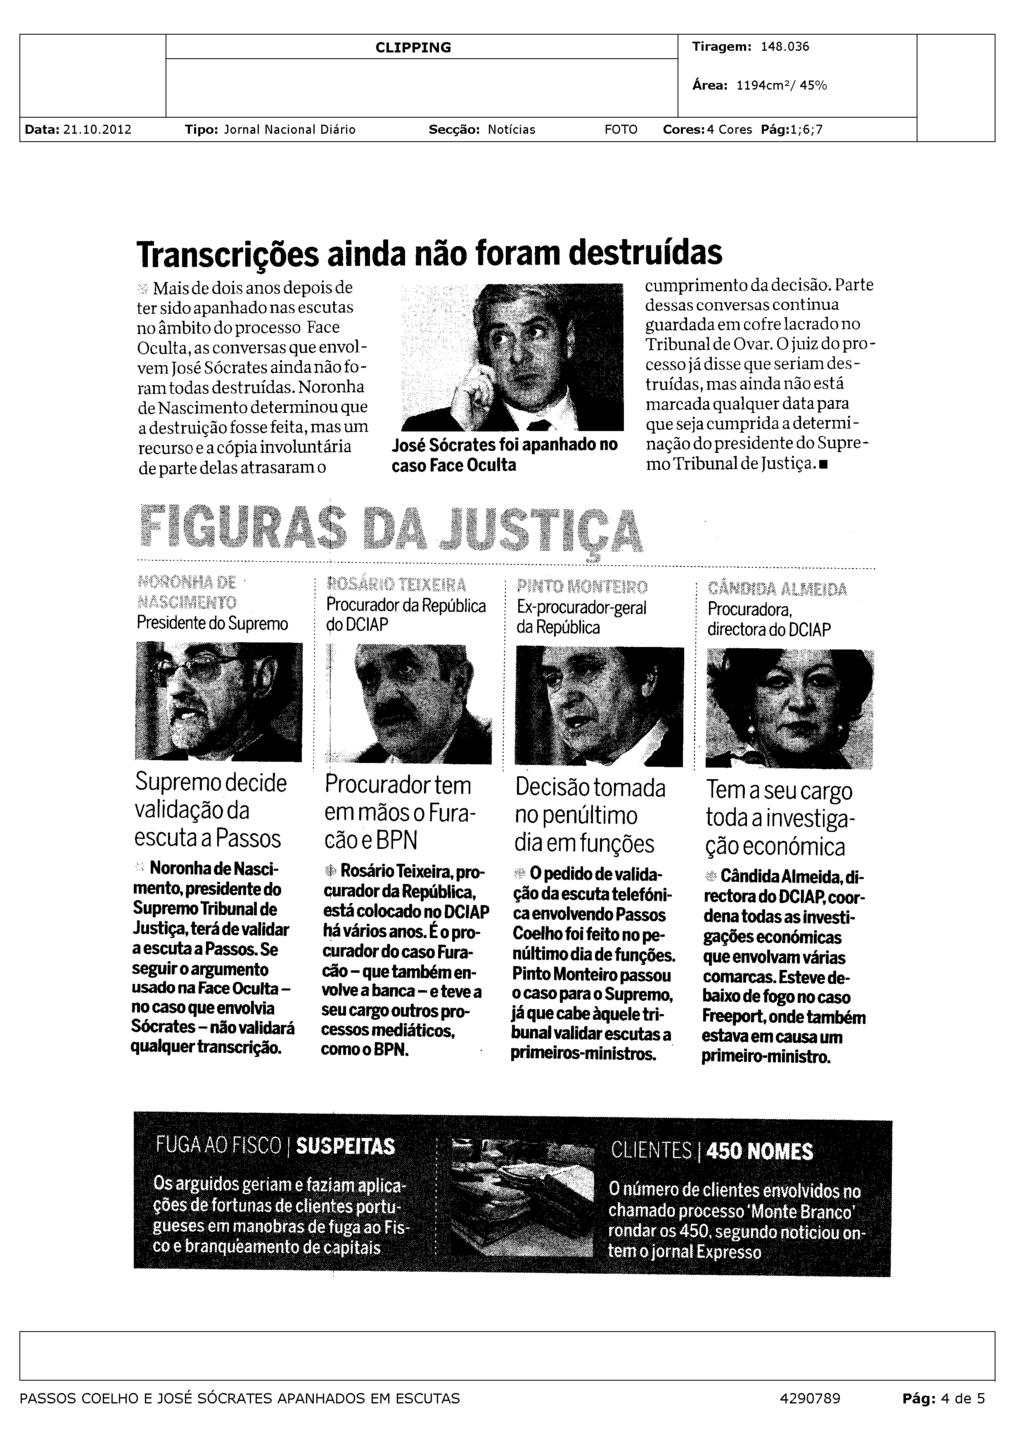 .6/05/2012 DETIDOS 20/05/2012 CLIENTES DE LUXO 0 CM noticia que Dias Loureiro e Oliveira e Costa eram dois dos clientes de luxo.